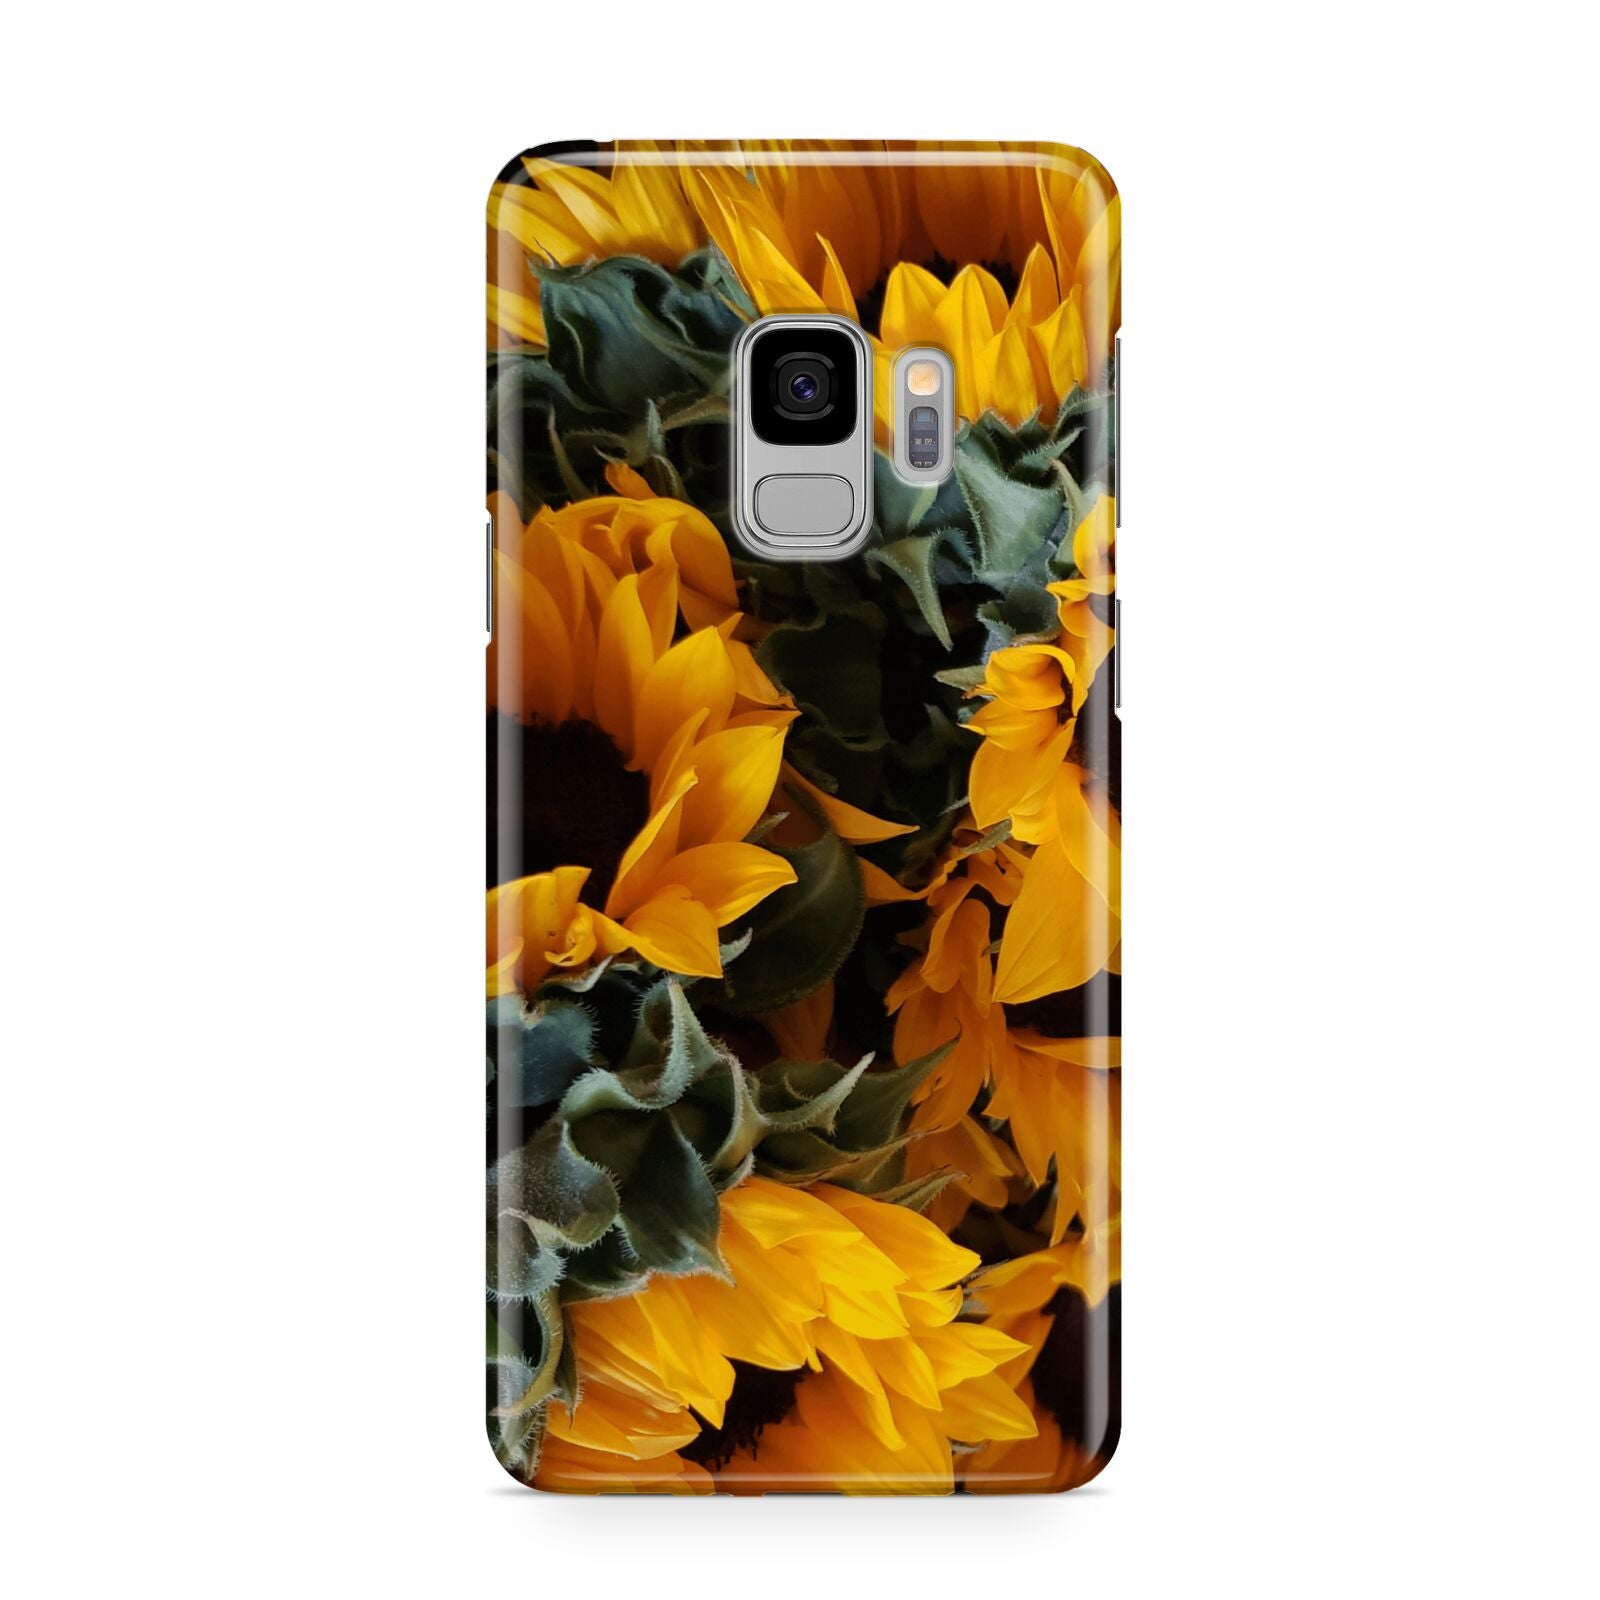 Sunflower Samsung Galaxy S9 Case